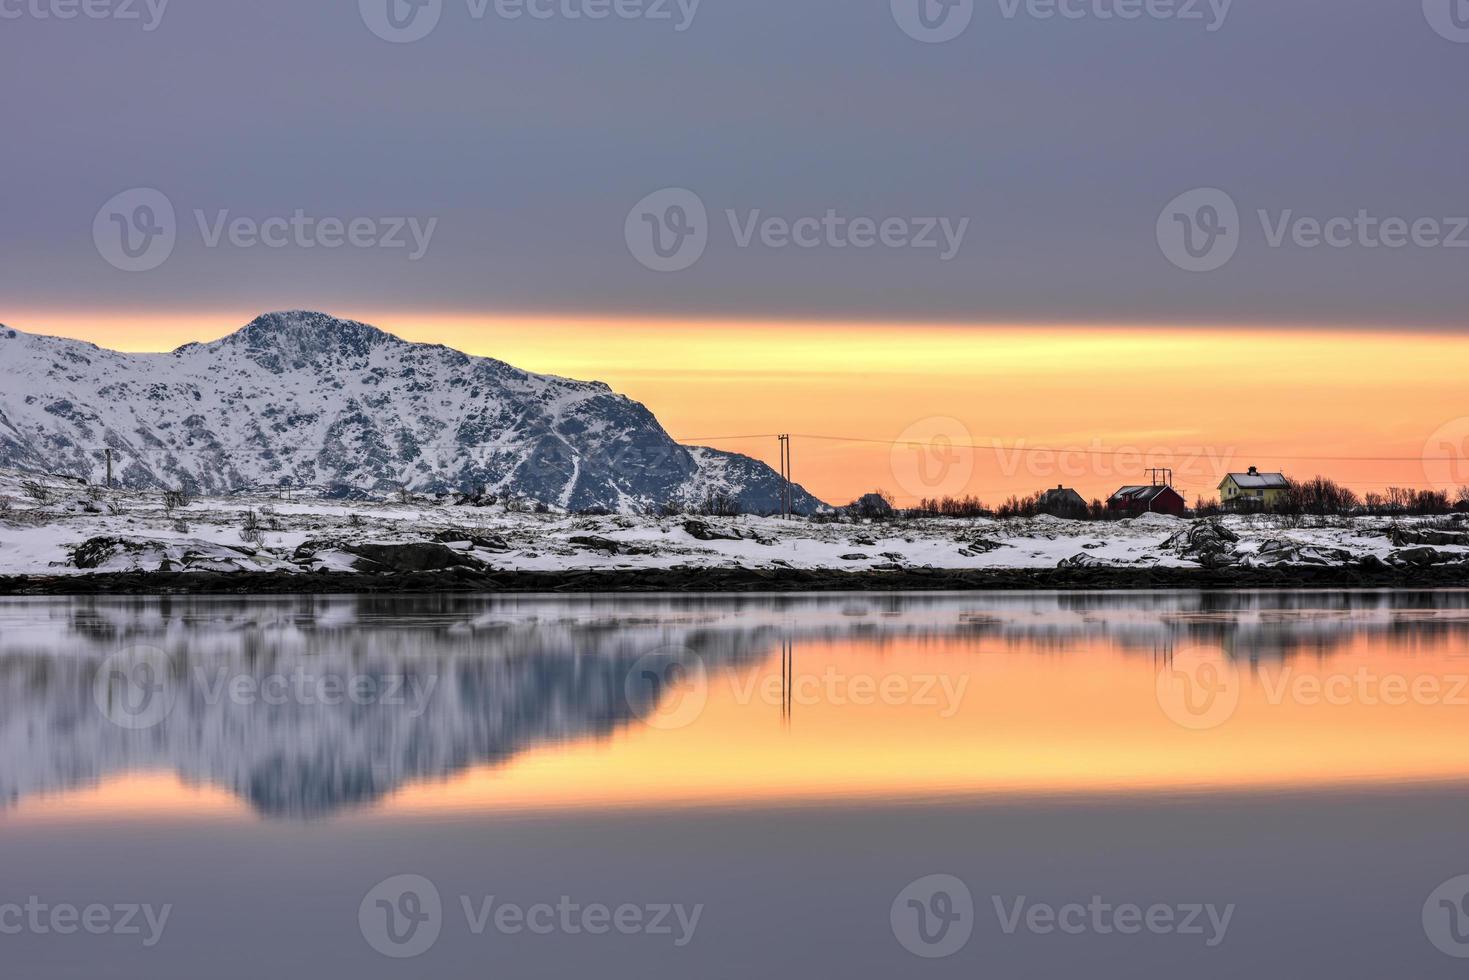 Vagspollen-Spiegelung bei Sonnenaufgang auf den Lofoten, Norwegen im Winter. foto